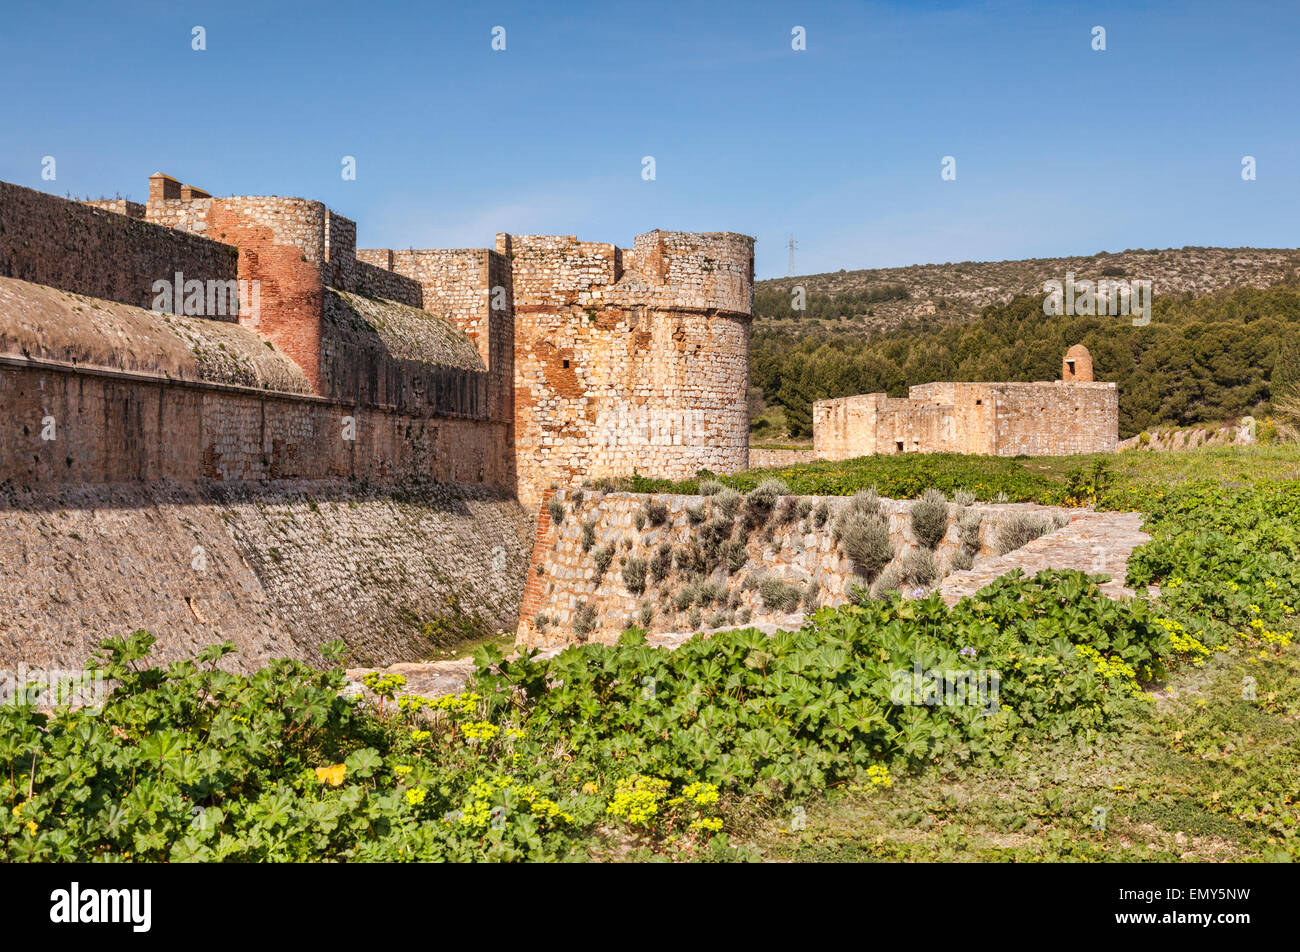 Fort de Salses, Salses-le-Chateau, Languedoc- Rousssillon, Pyrenees-Orientales, France. Stock Photo